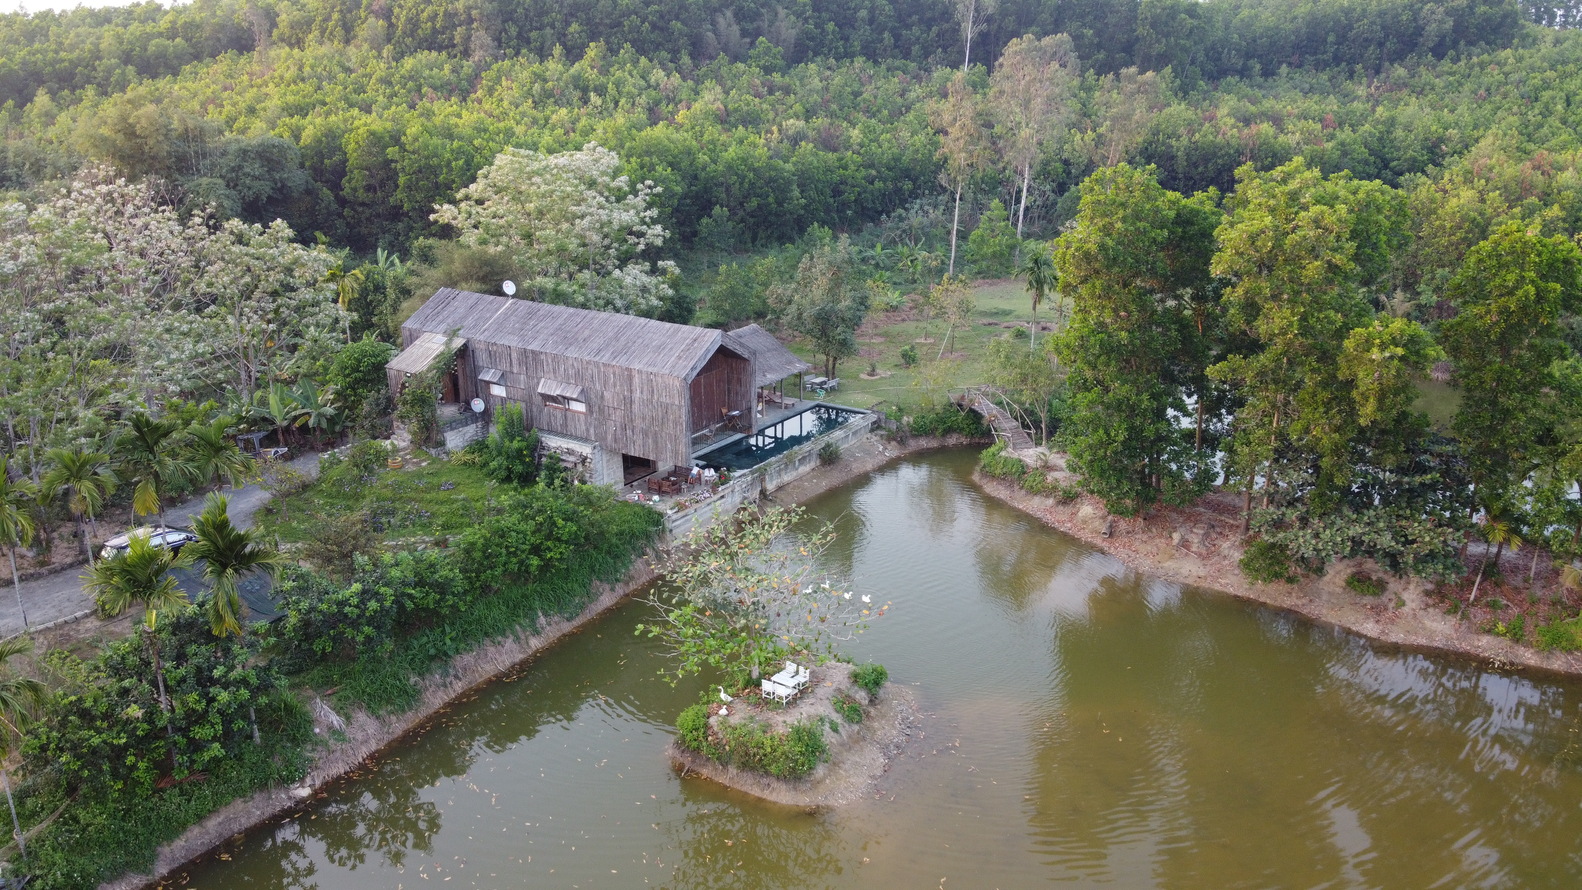 hình ảnh khuôn viên nhà Hoa Phong nhìn từ trên cao với cây xanh ngập tràn, hồ nước mát lành